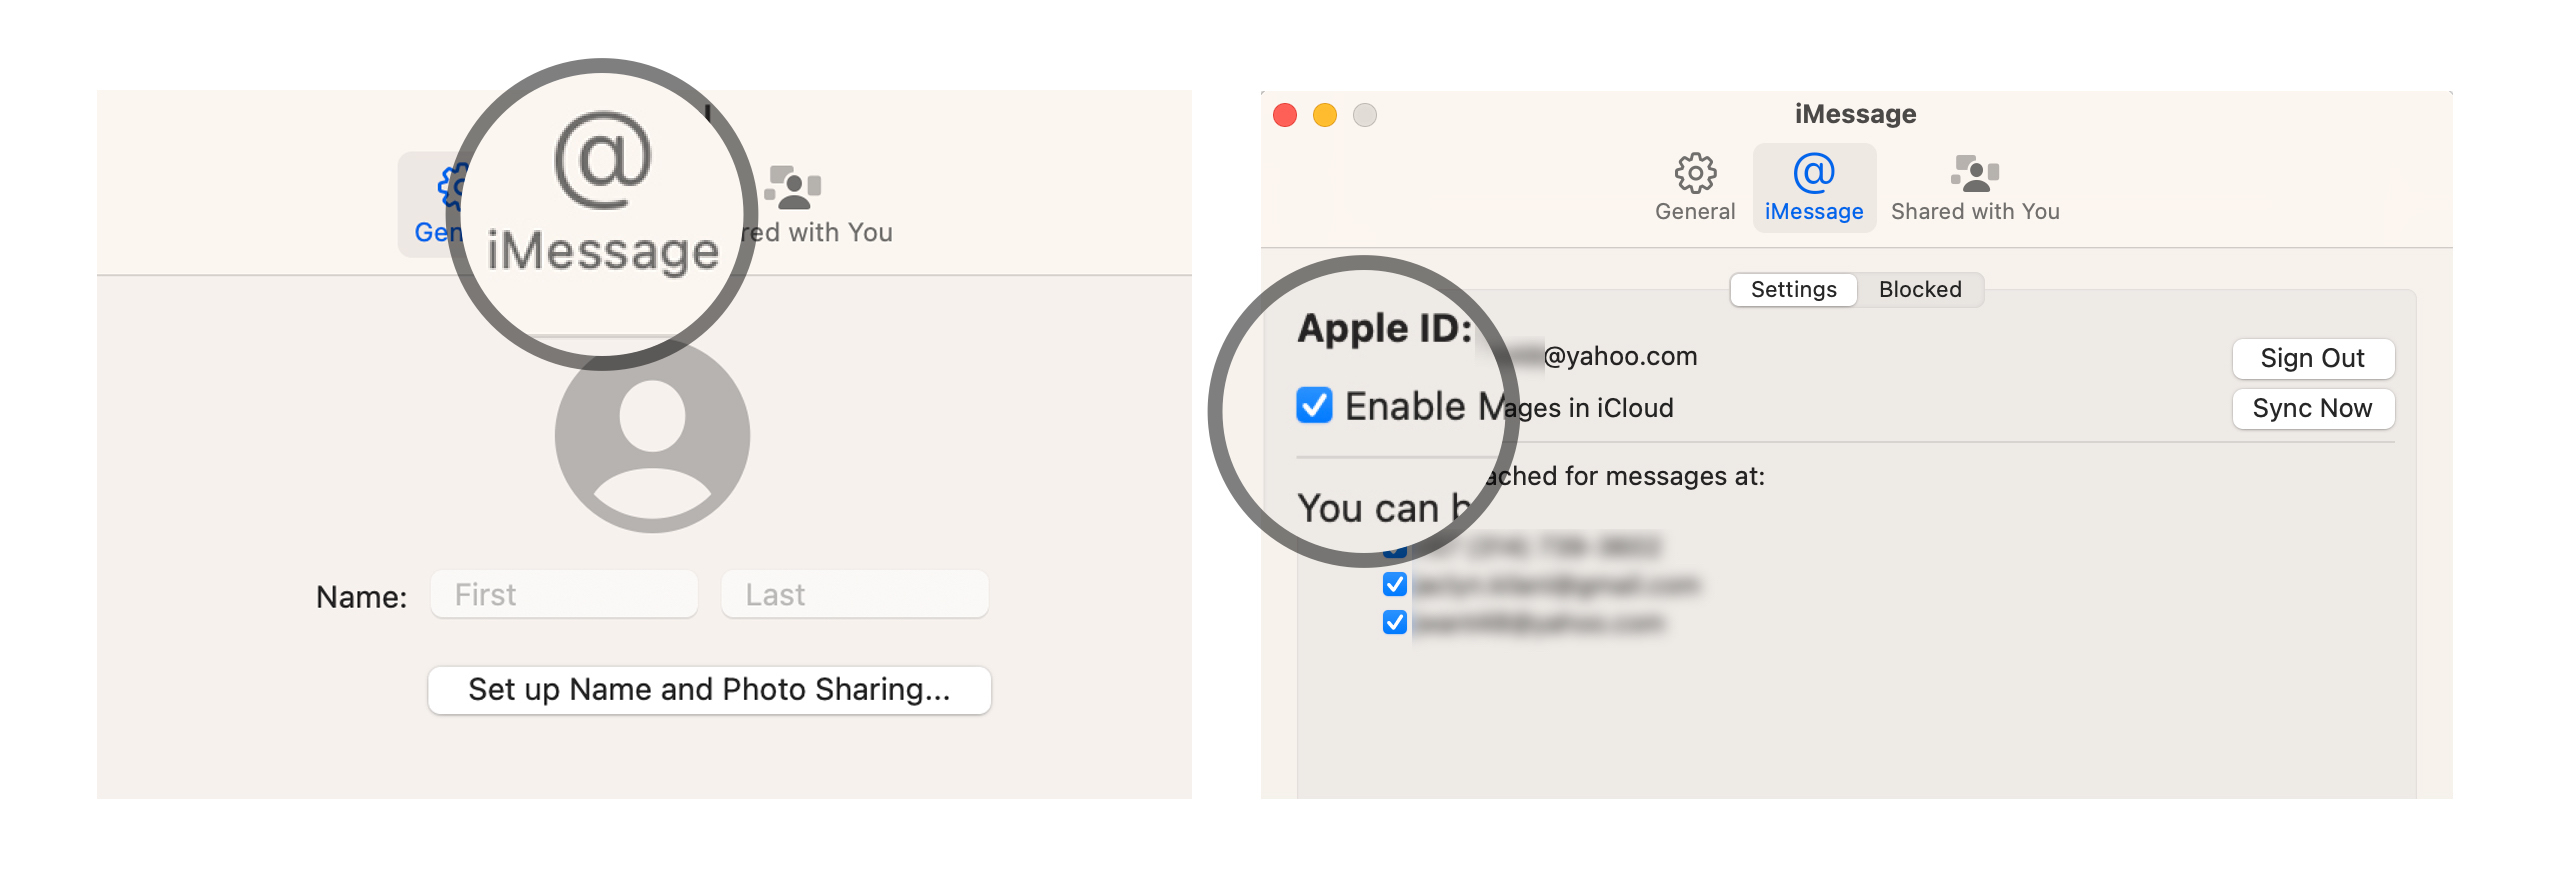 Vaya a la pestaña iMessage en la configuración de preferencias.  Marque la casilla Habilitar mensajes en iCloud.